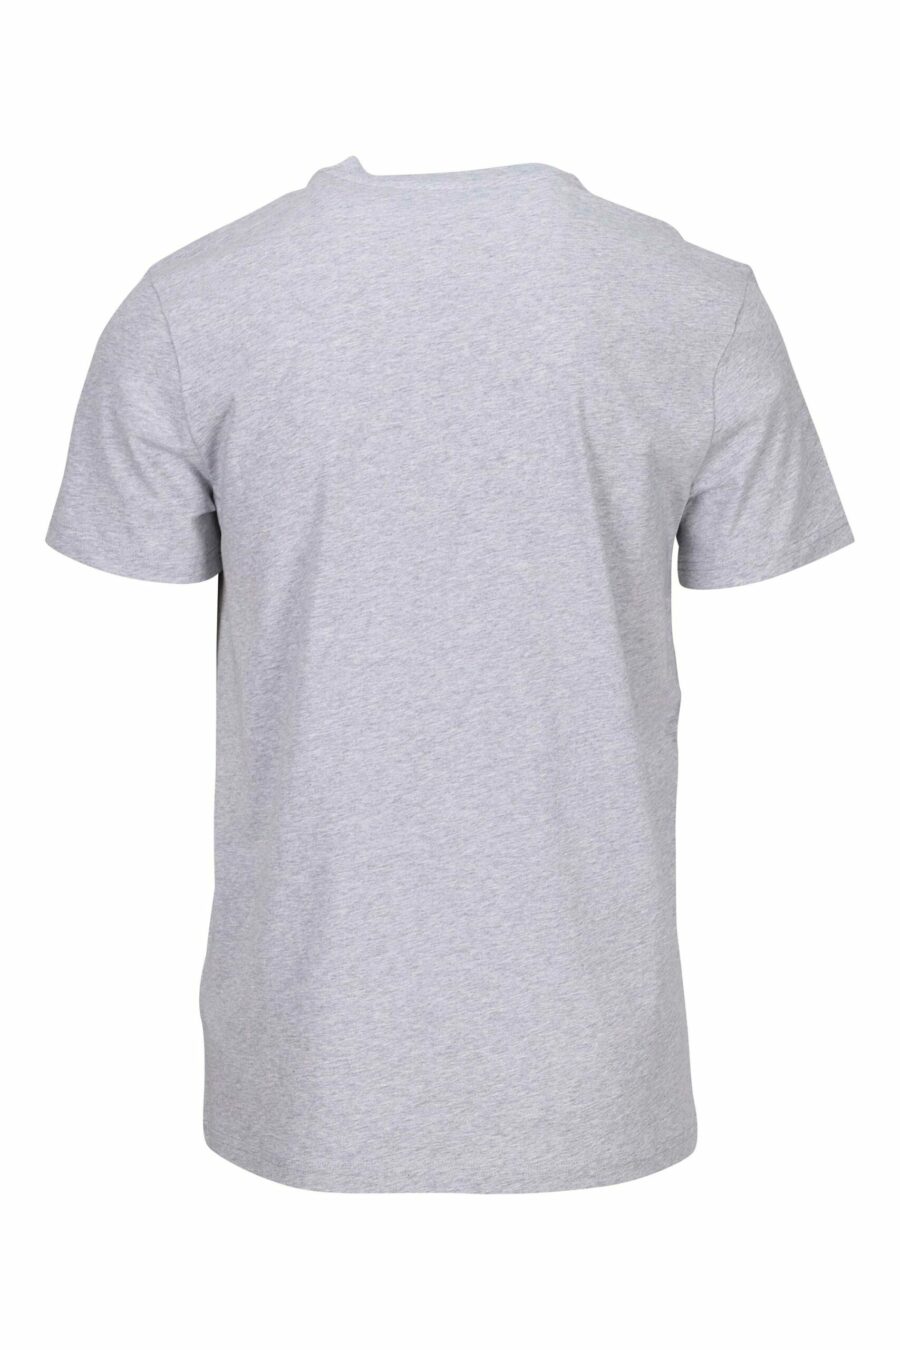 Camiseta gris "oversize" de algodón orgánico con maxilogo negro clásico - 667113751986 1 scaled